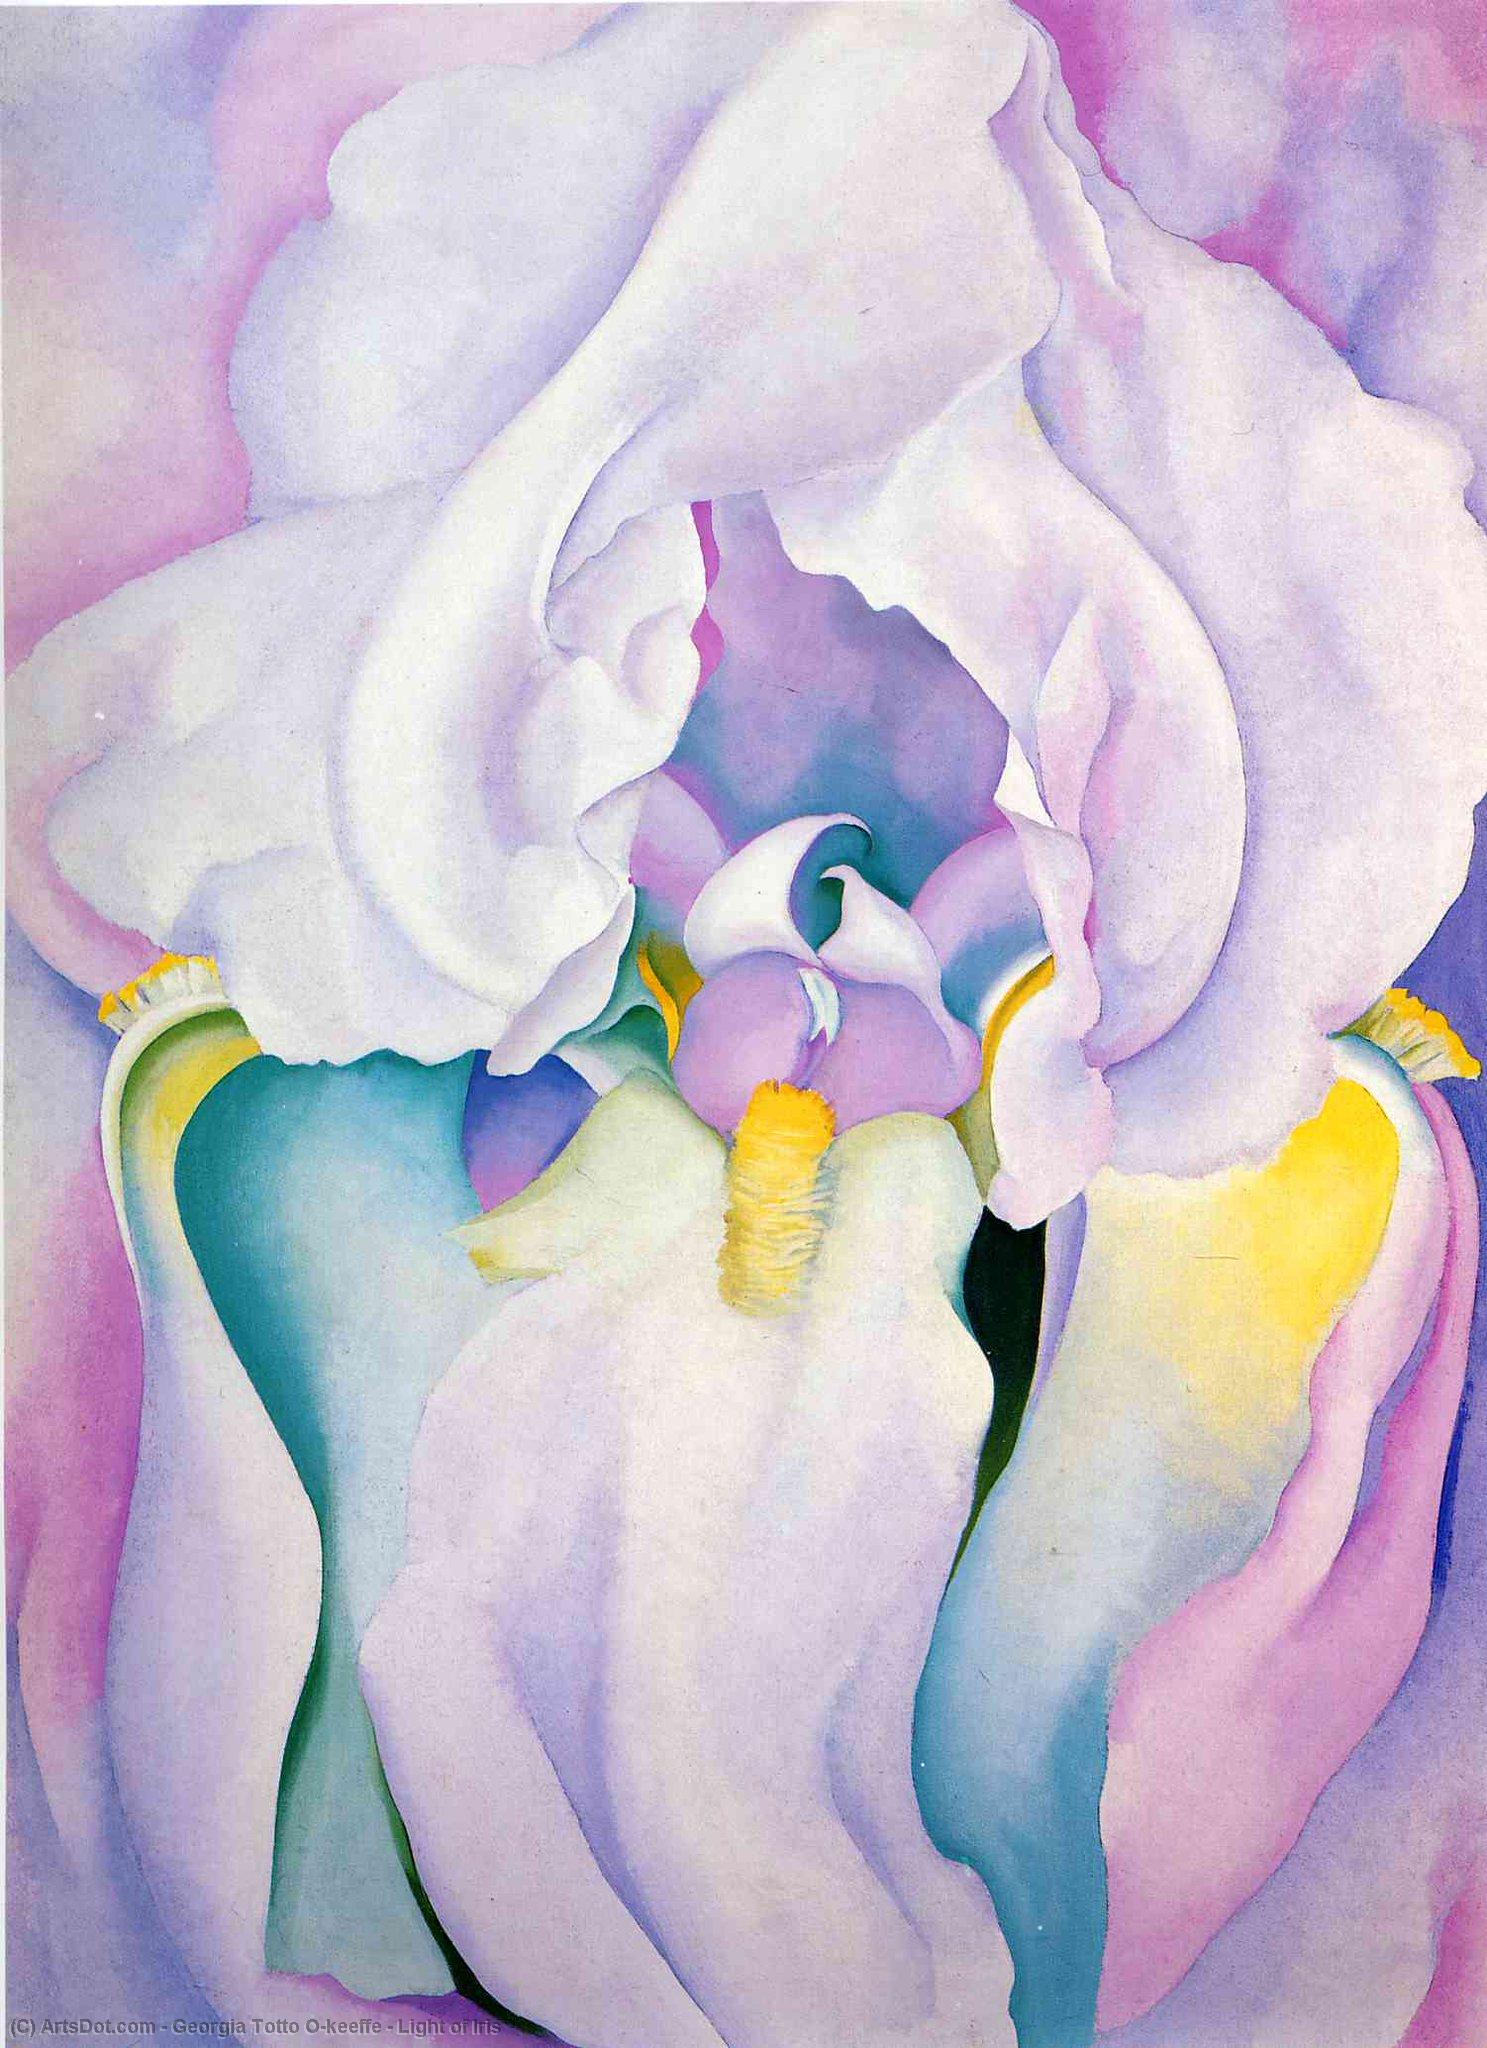 WikiOO.org - Енциклопедия за изящни изкуства - Живопис, Произведения на изкуството Georgia Totto O'keeffe - Light of Iris